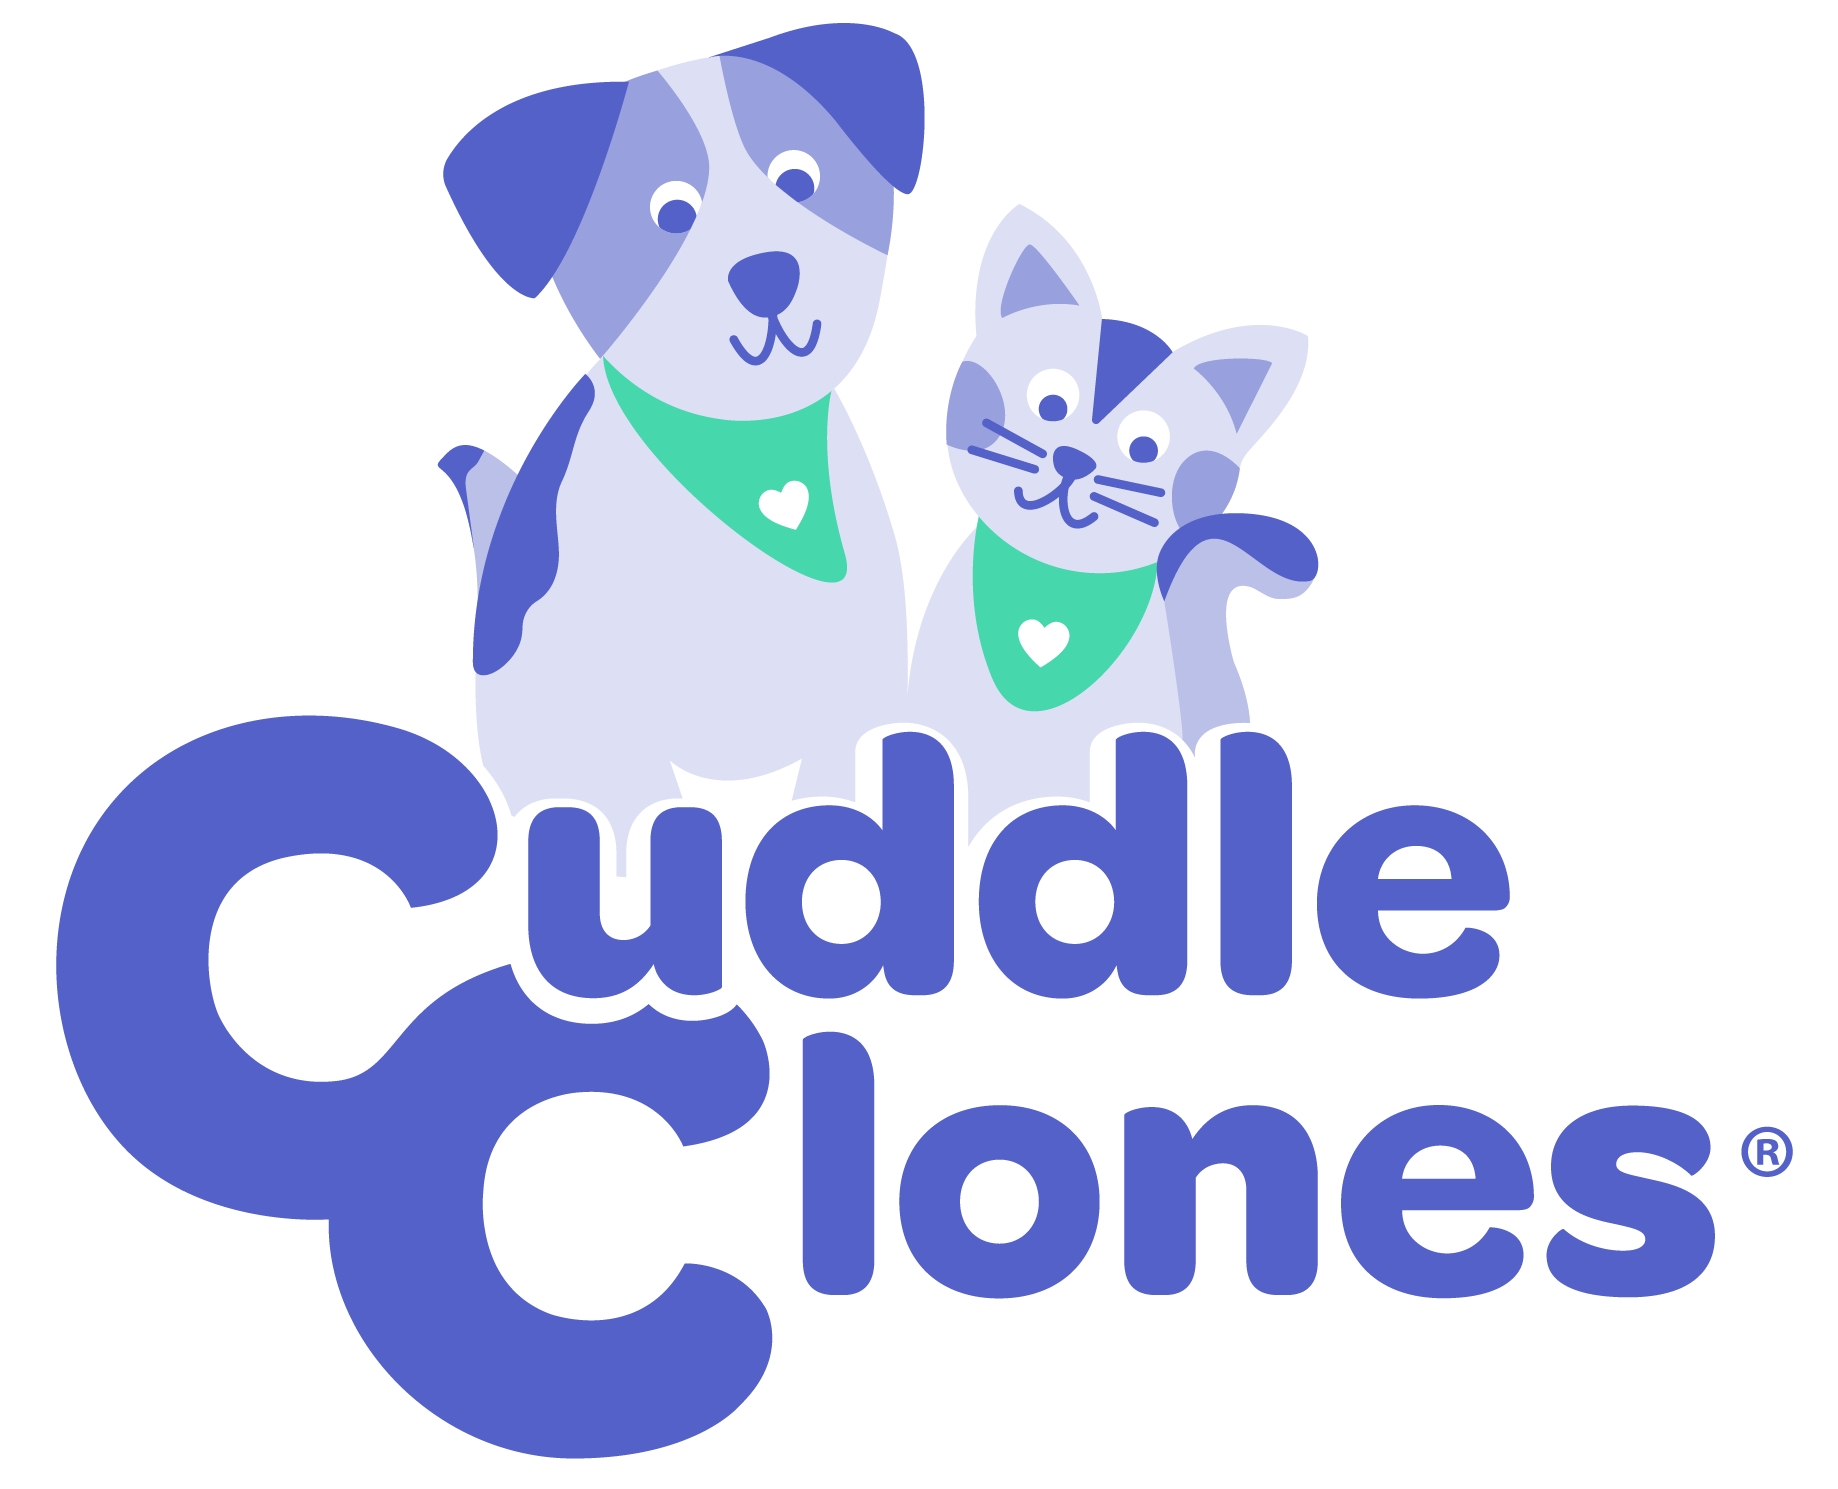 cuddle clones